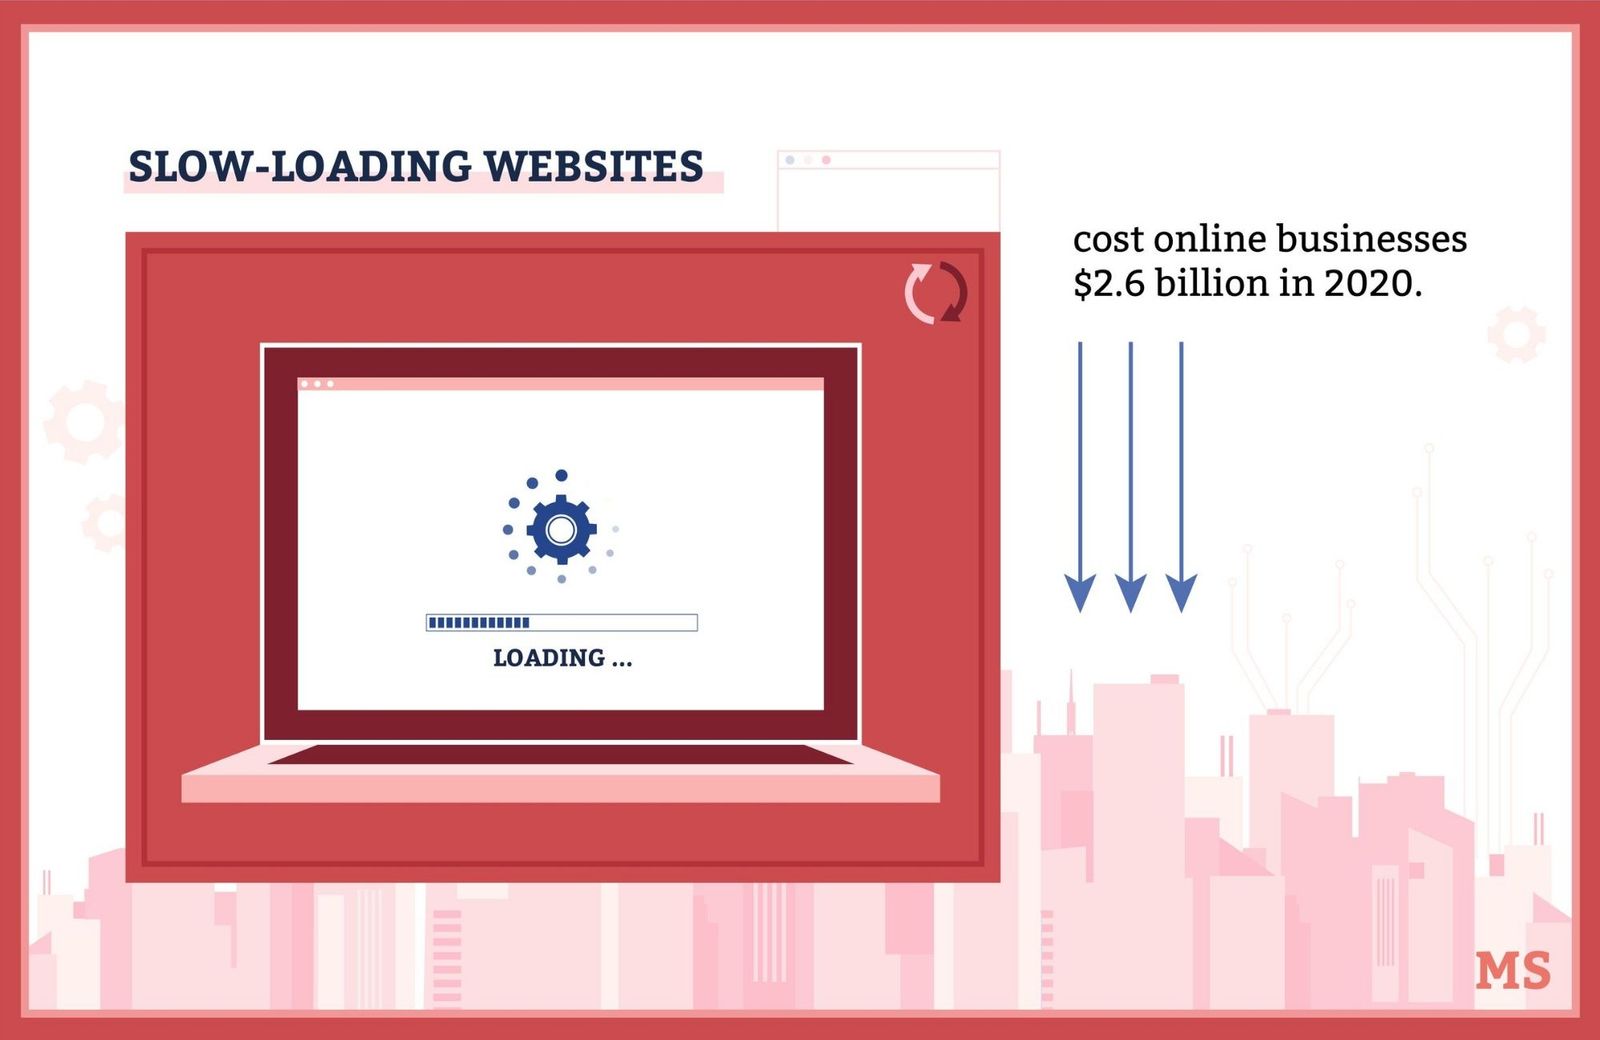 Slow-loading websites